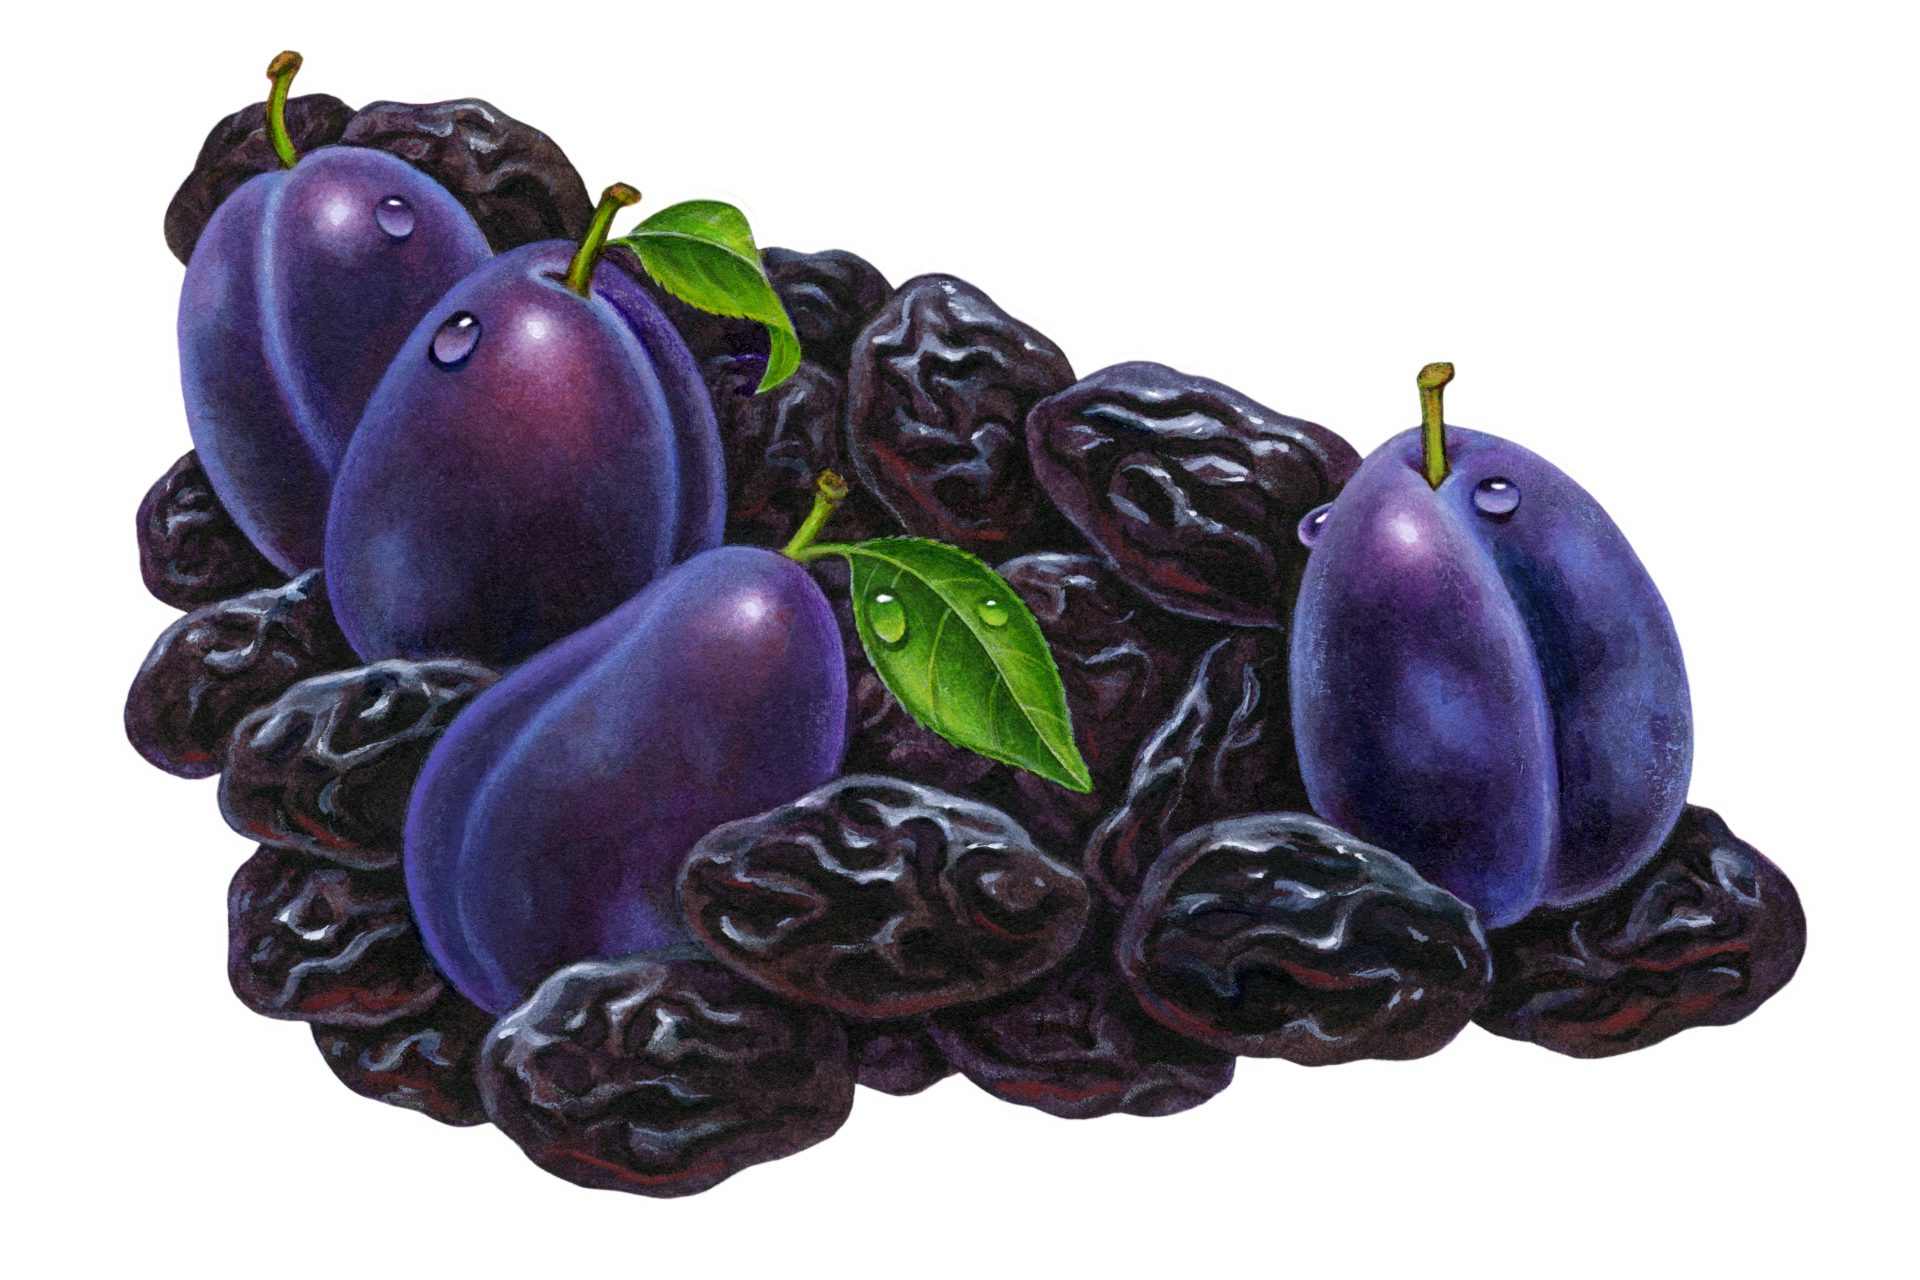 Et si on renommait les pruneaux du nom de prunes séchées ?